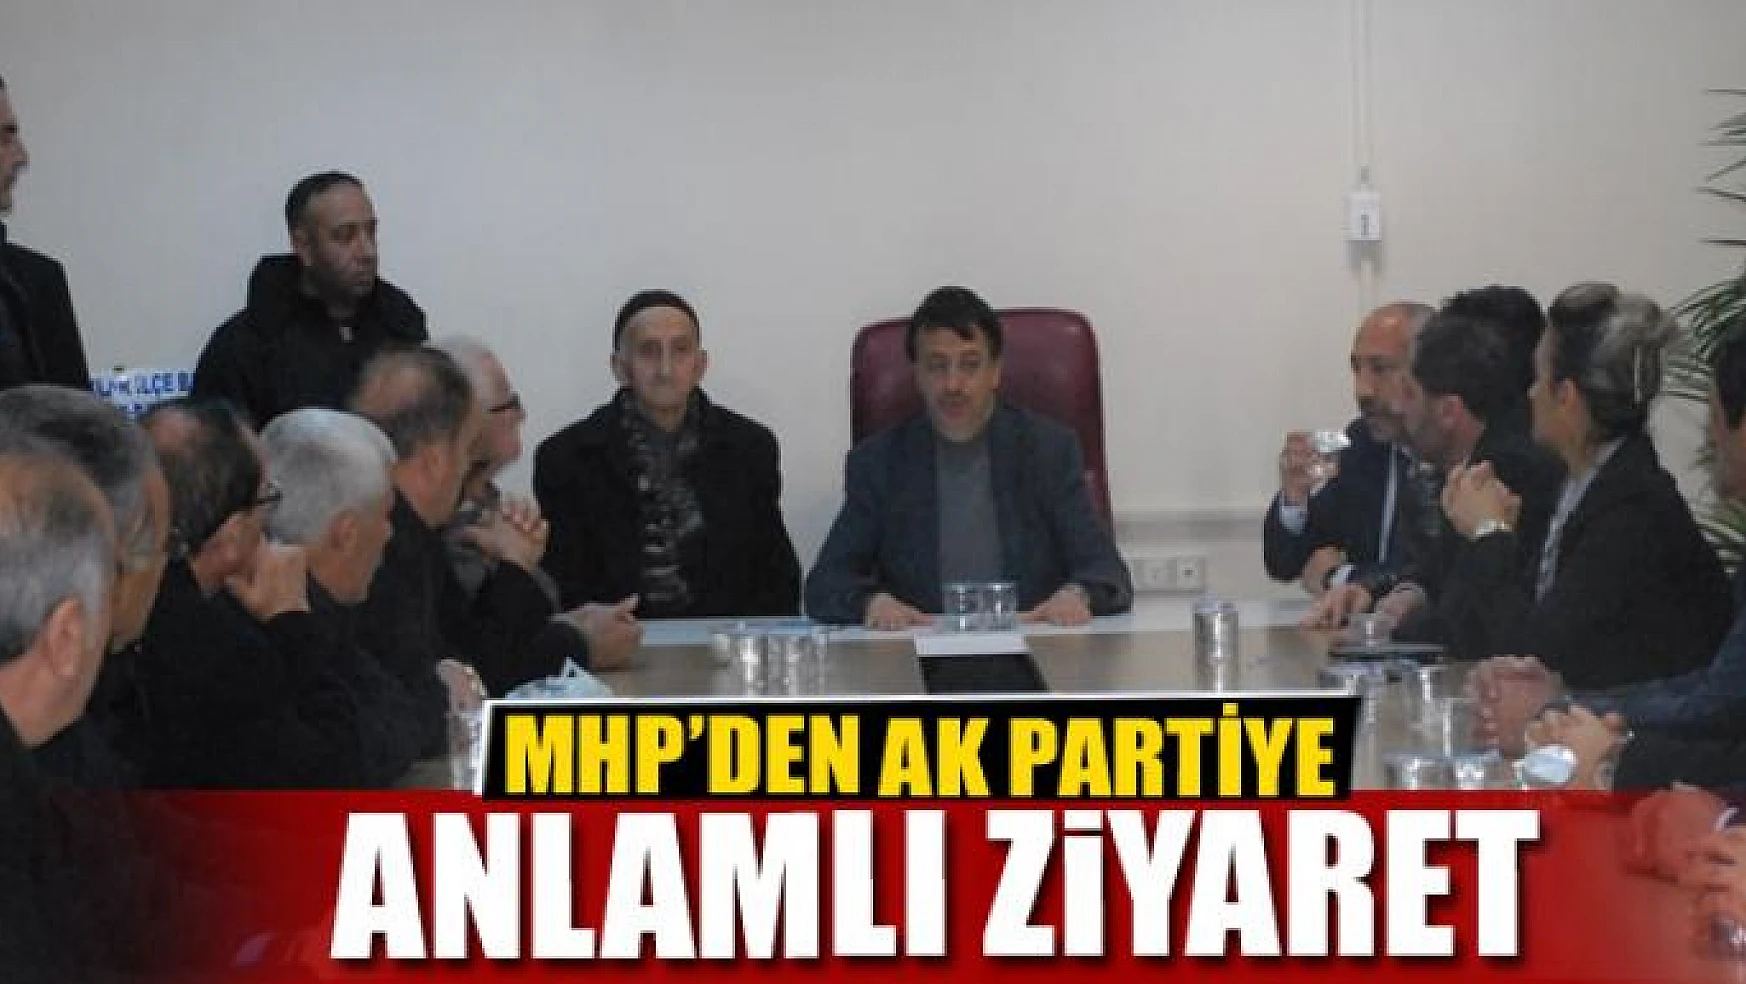 MHP'den AK Partiye ziyaret 